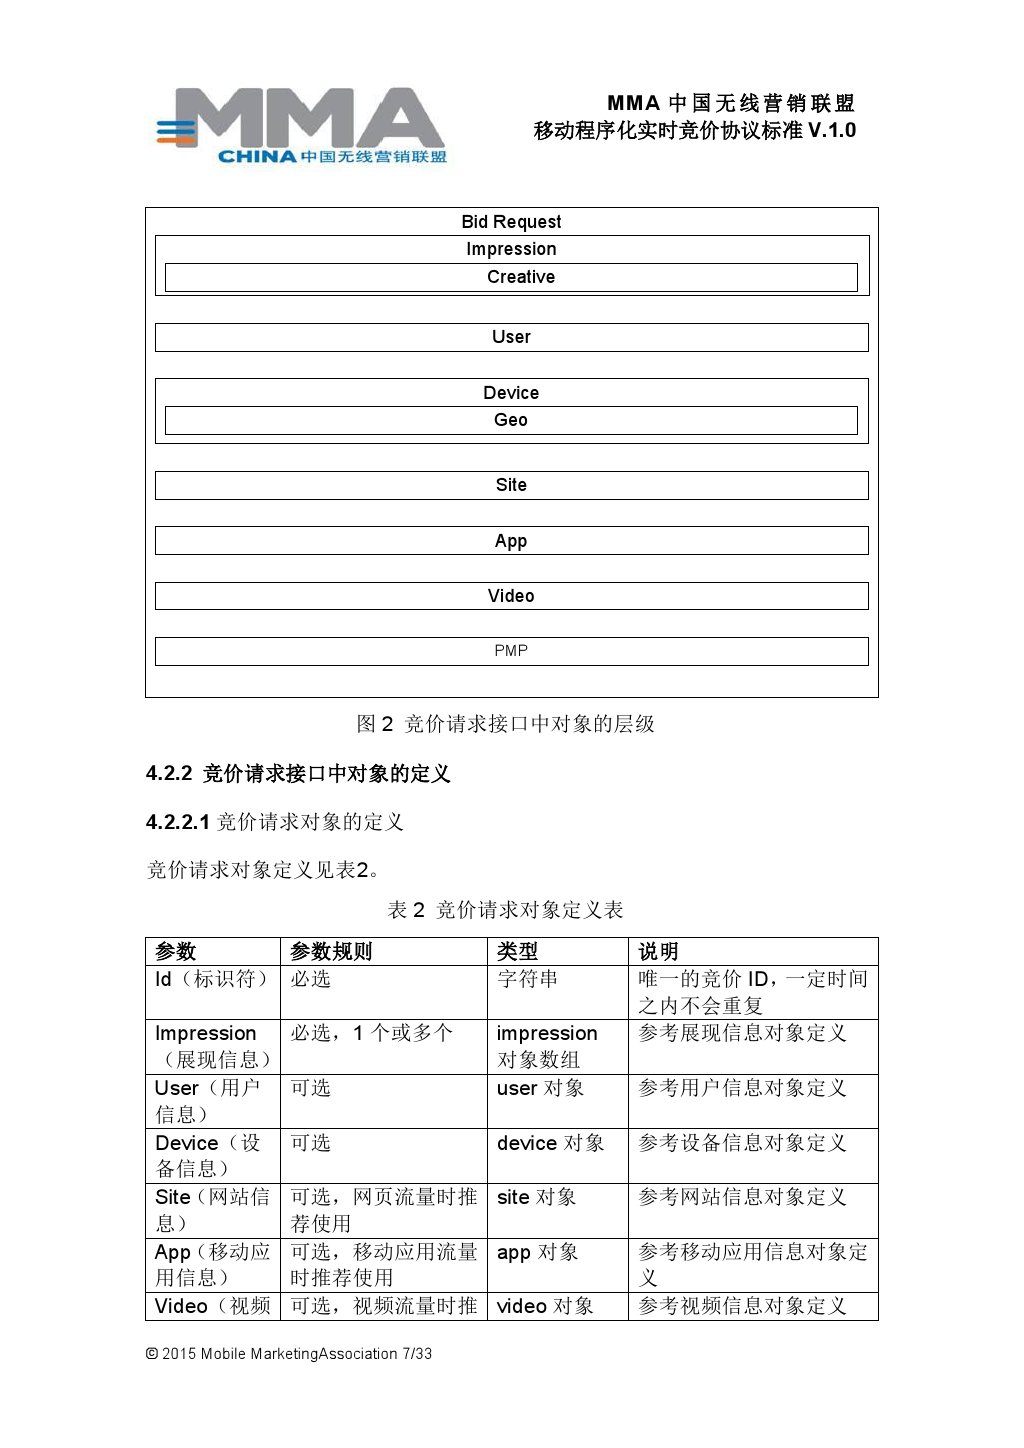 MMA中国无线营销联盟移动程序化实时竞价协议标准V.1.0_000008